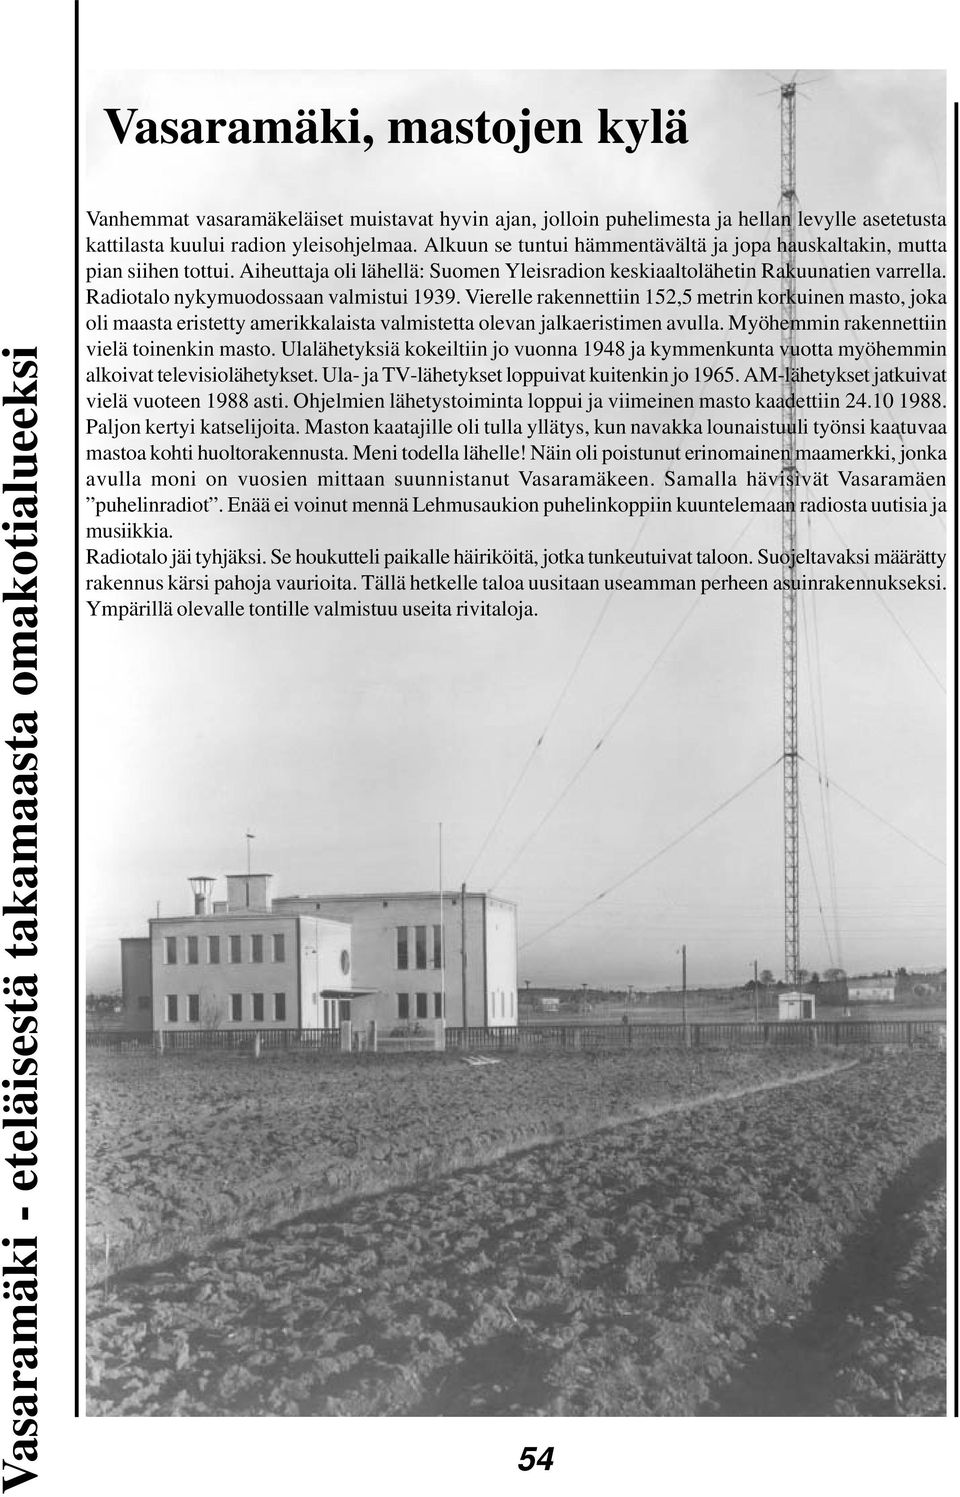 Radiotalo nykymuodossaan valmistui 1939. Vierelle rakennettiin 152,5 metrin korkuinen masto, joka oli maasta eristetty amerikkalaista valmistetta olevan jalkaeristimen avulla.